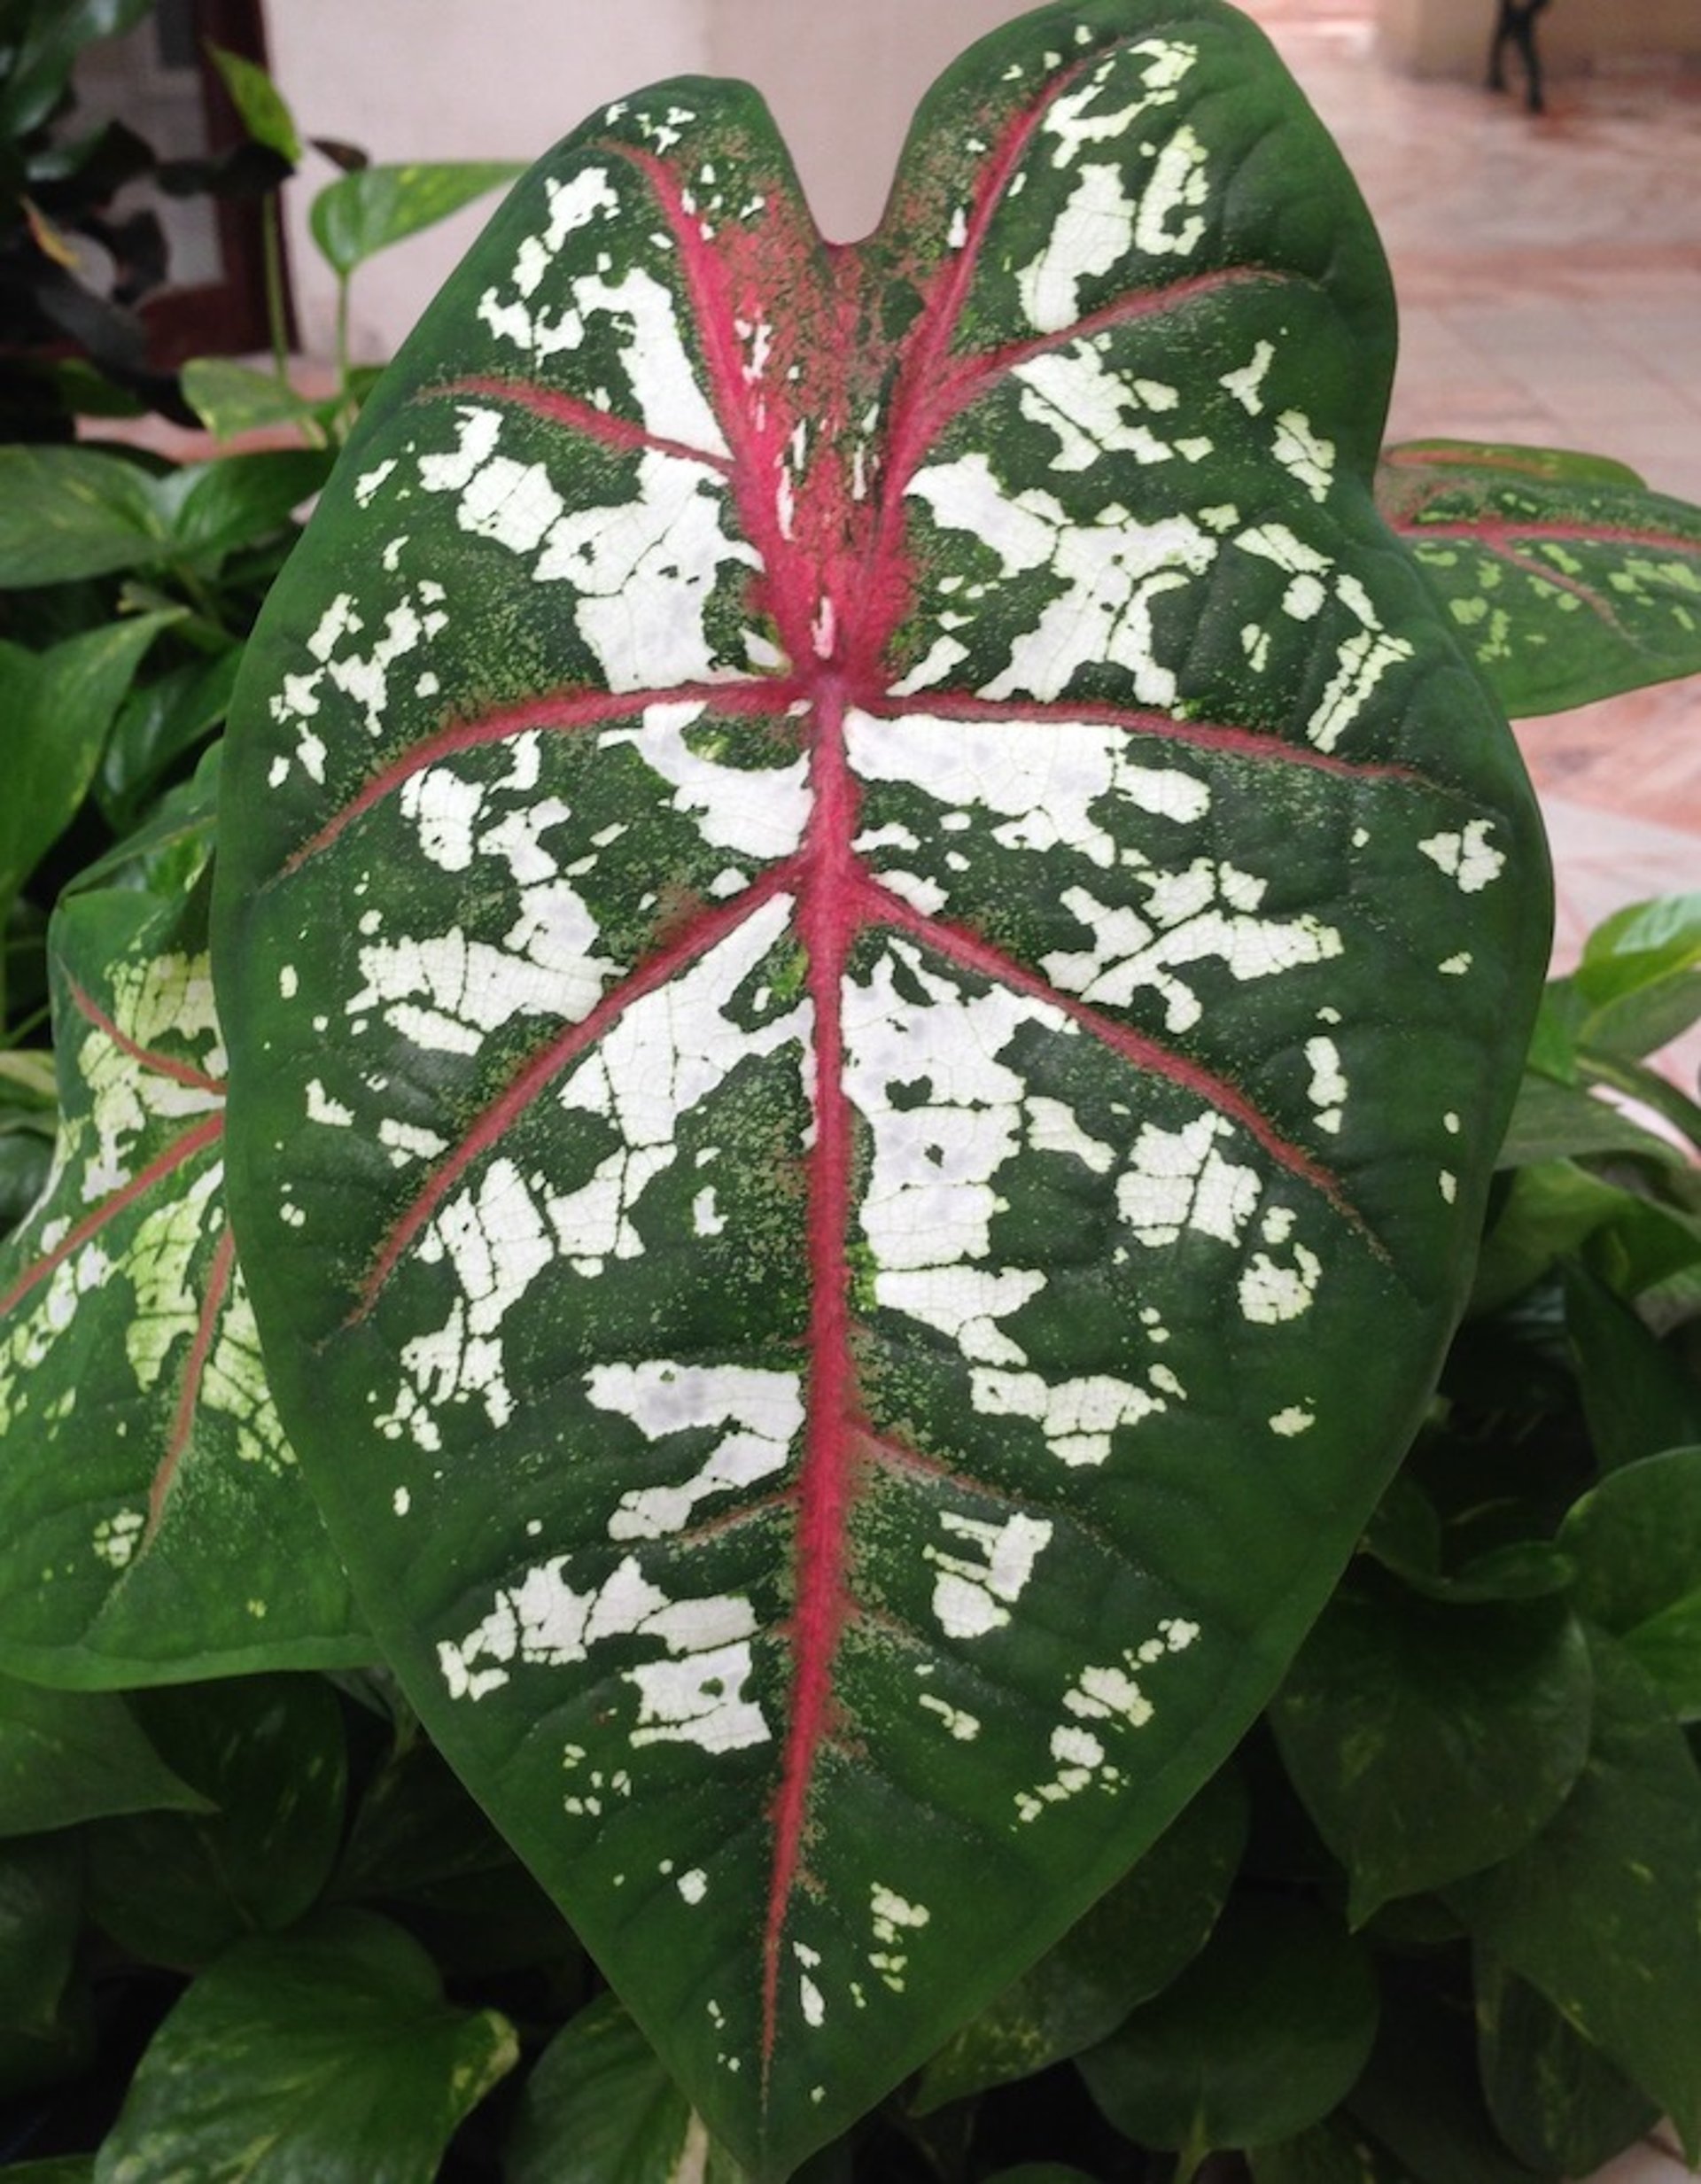 Caladium leaf, closeup (<i >Caladium</i> spp)